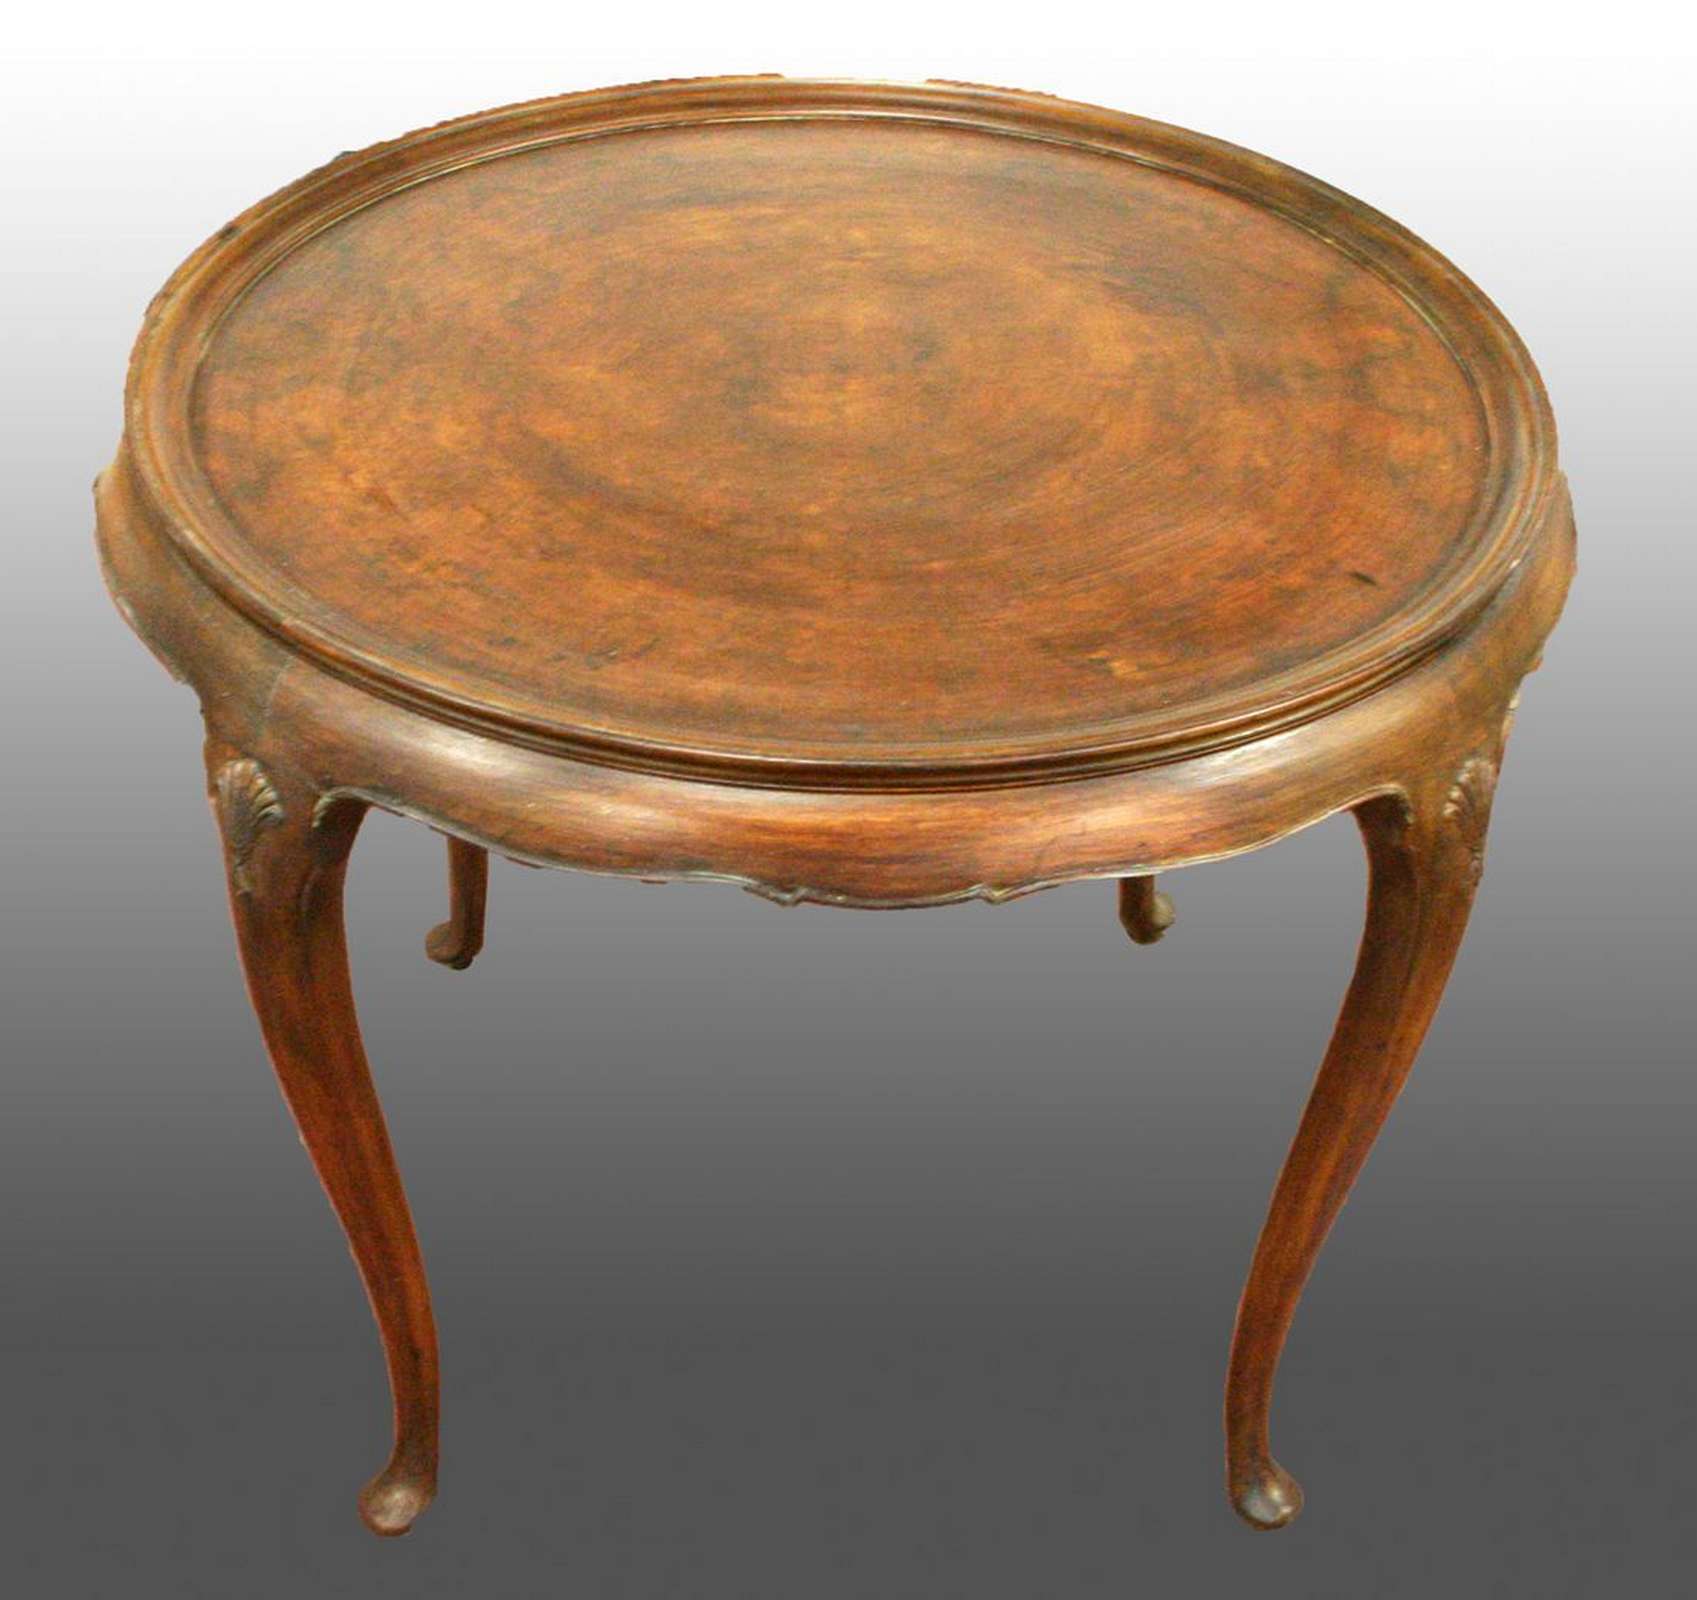 Antico tavolo in legno. Epoca 1800. - Tavoli in legno - Tavoli e complementi - Prodotti - Antichità Fiorillo